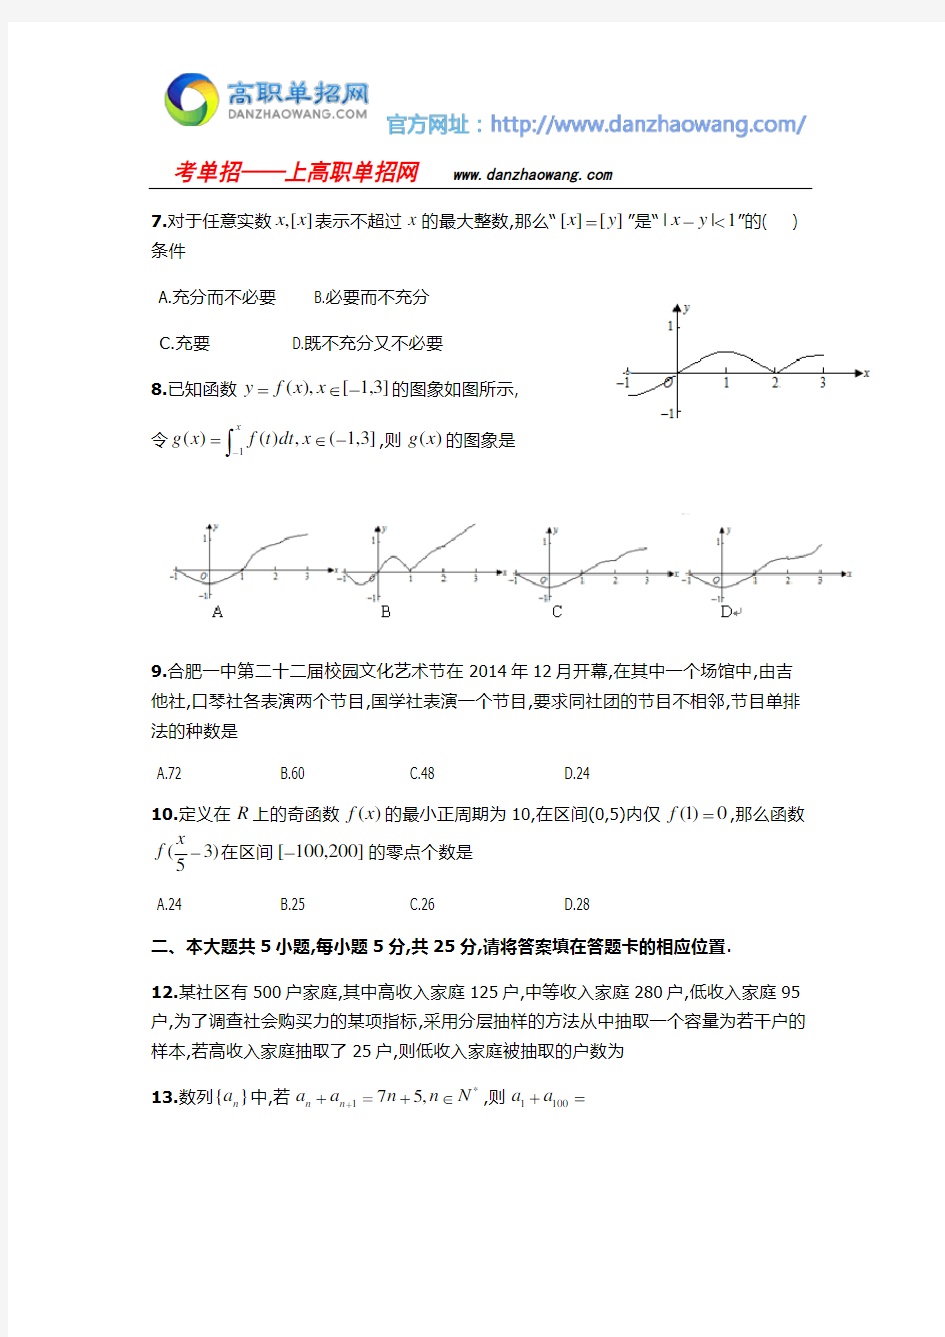 2016吉安职业技术学院数学单招测试题(附答案解析)